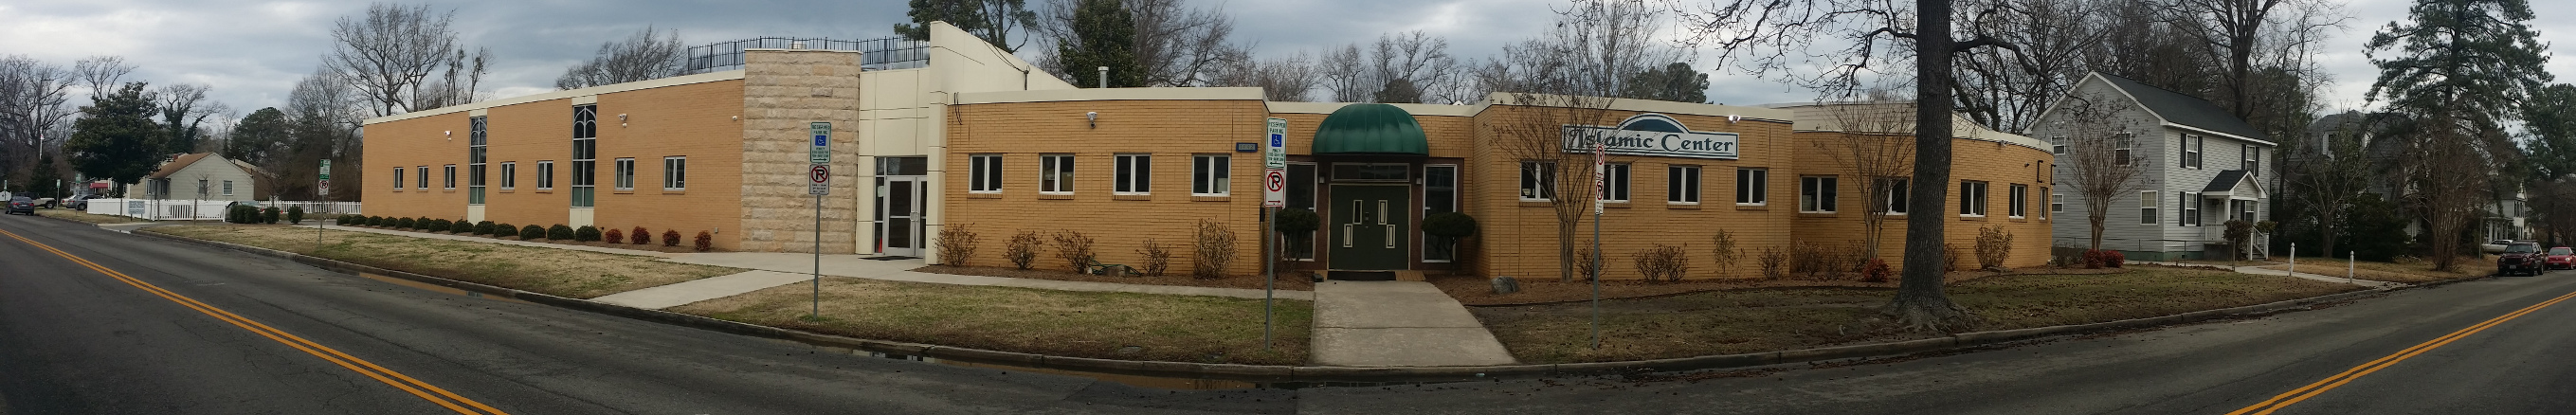 The Muslim Community of Tidewater (MCT) in Norfolk, Virginia (Building View)